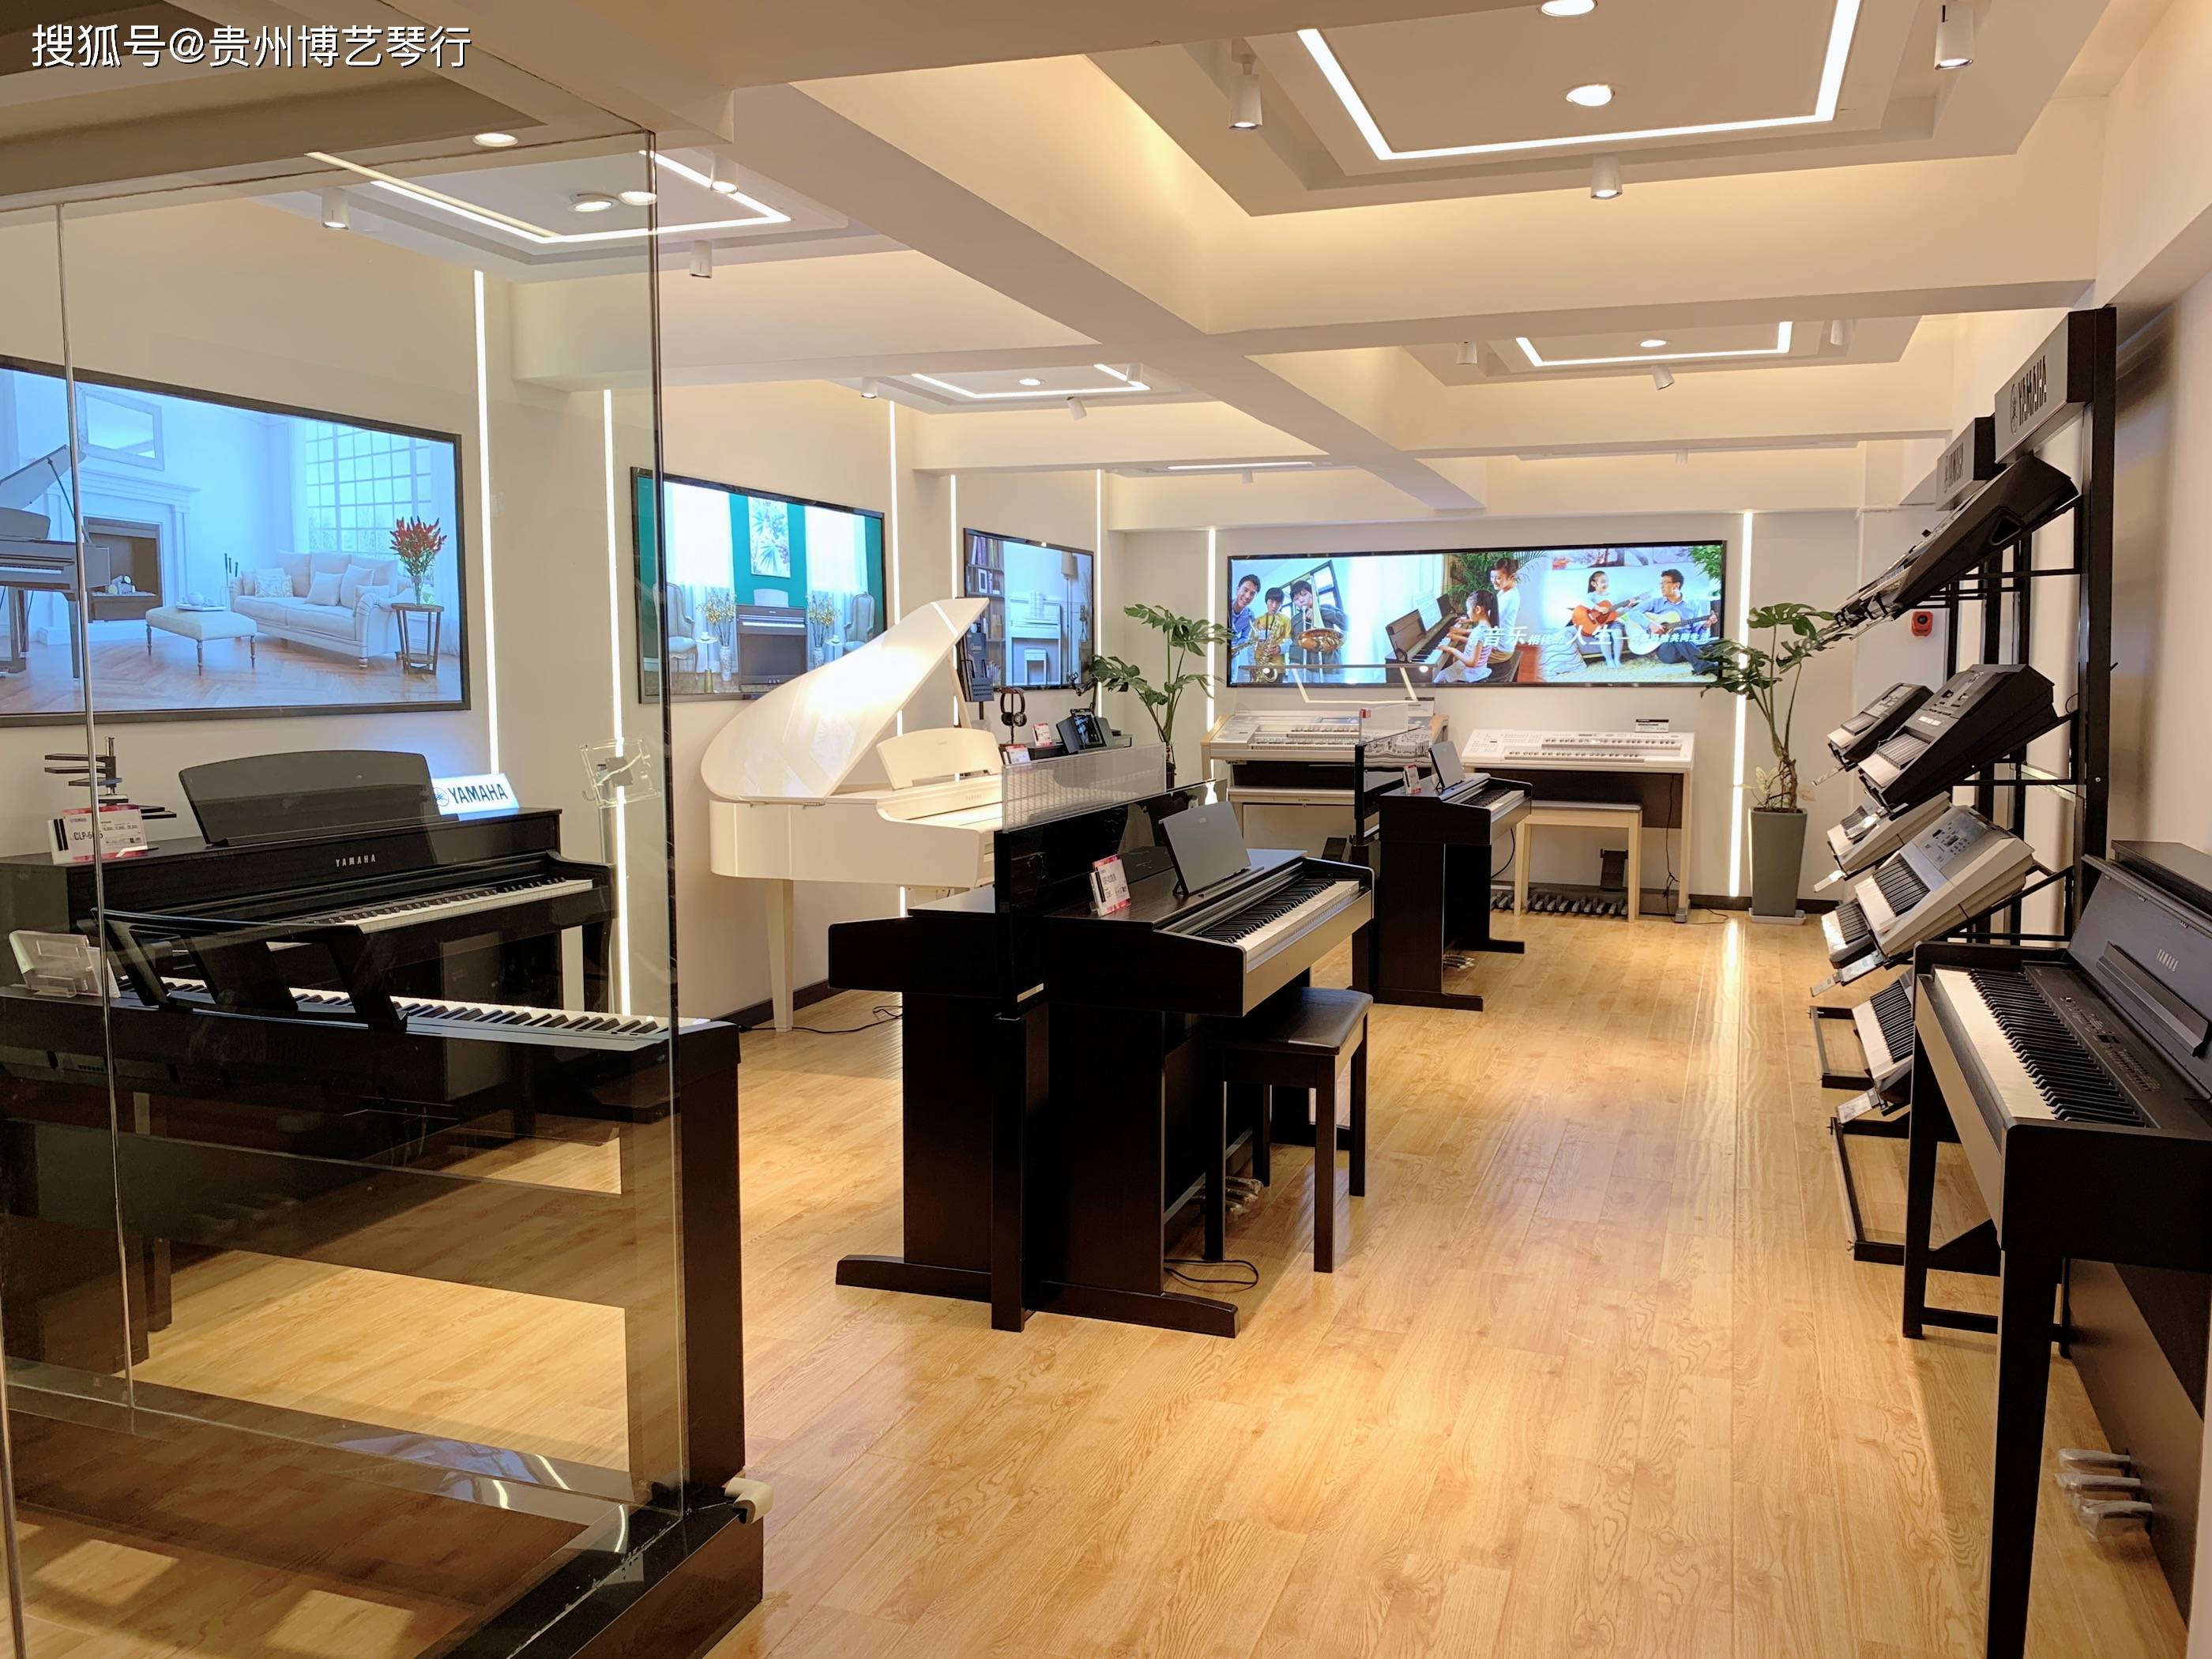 雅马哈钢琴专卖店升级改造完工新形象新面貌展示